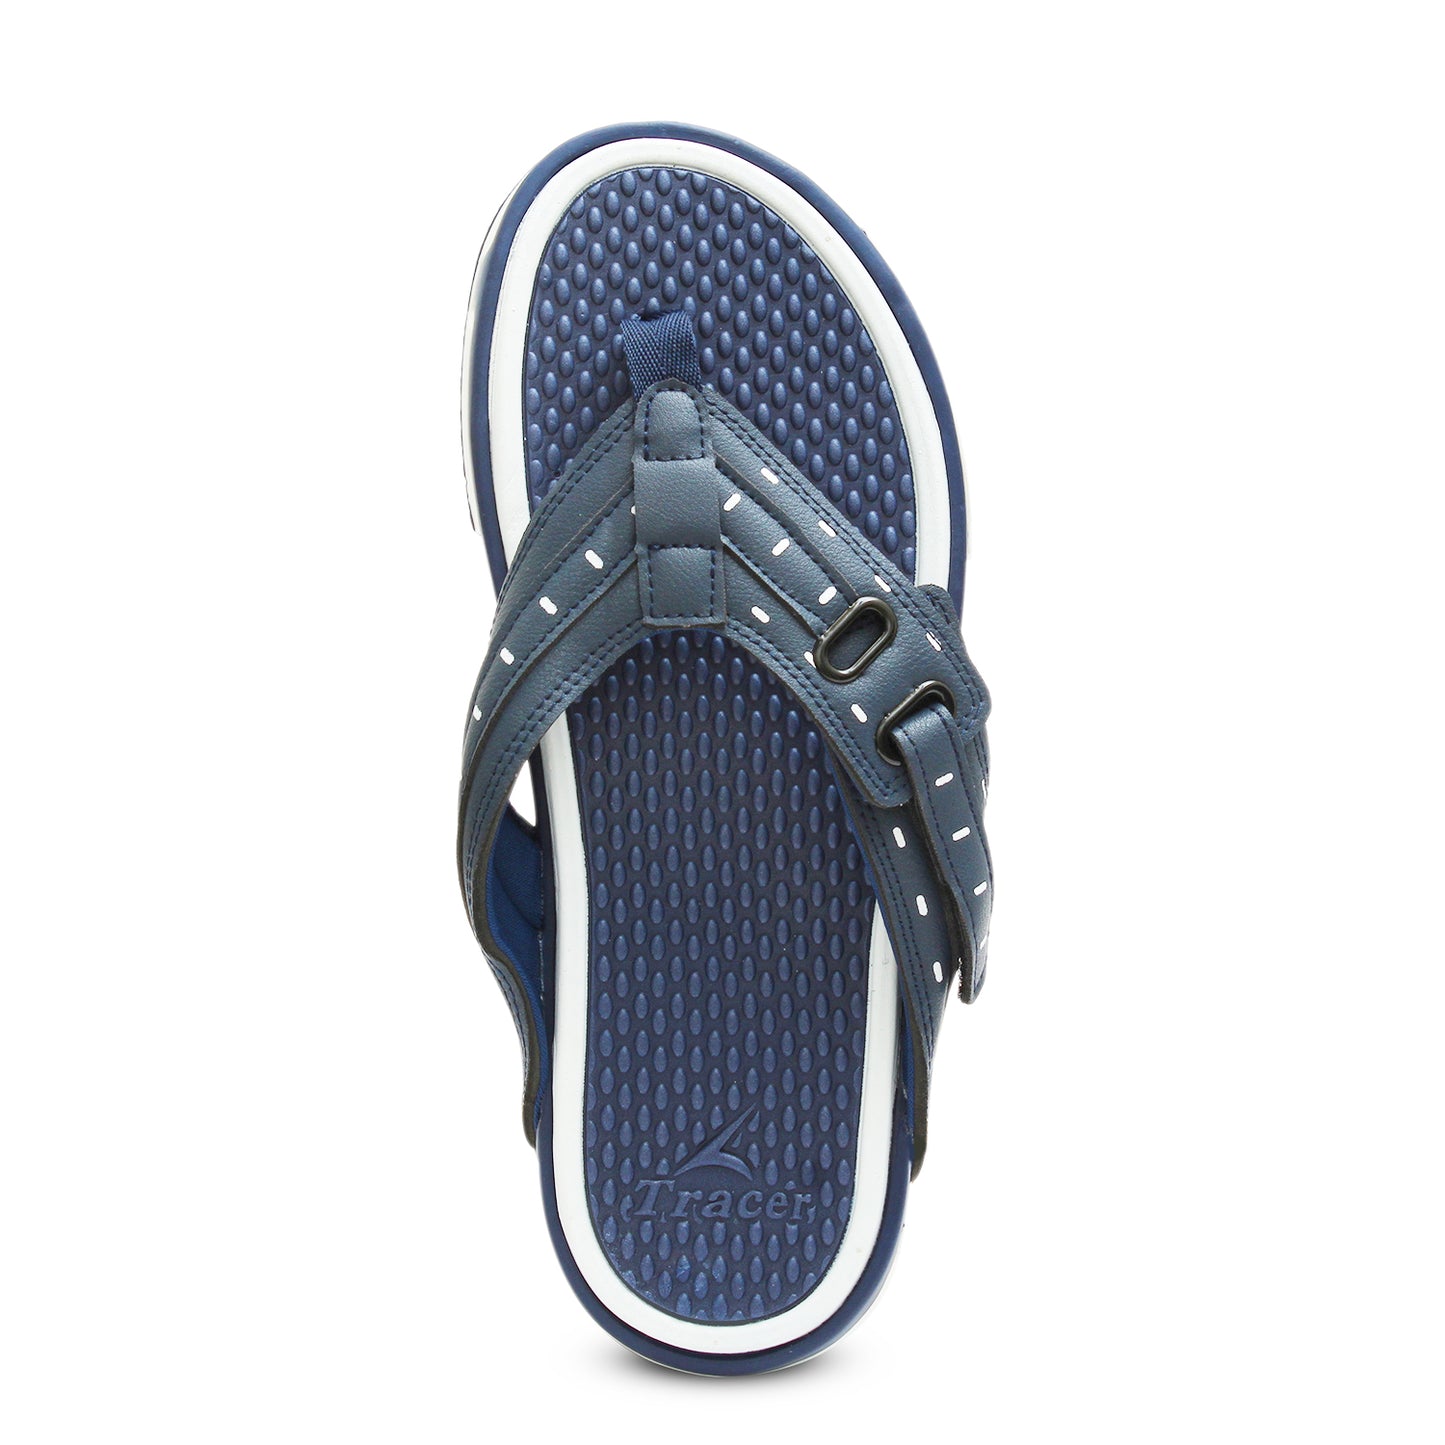 Flat Slippers For Men's Blue